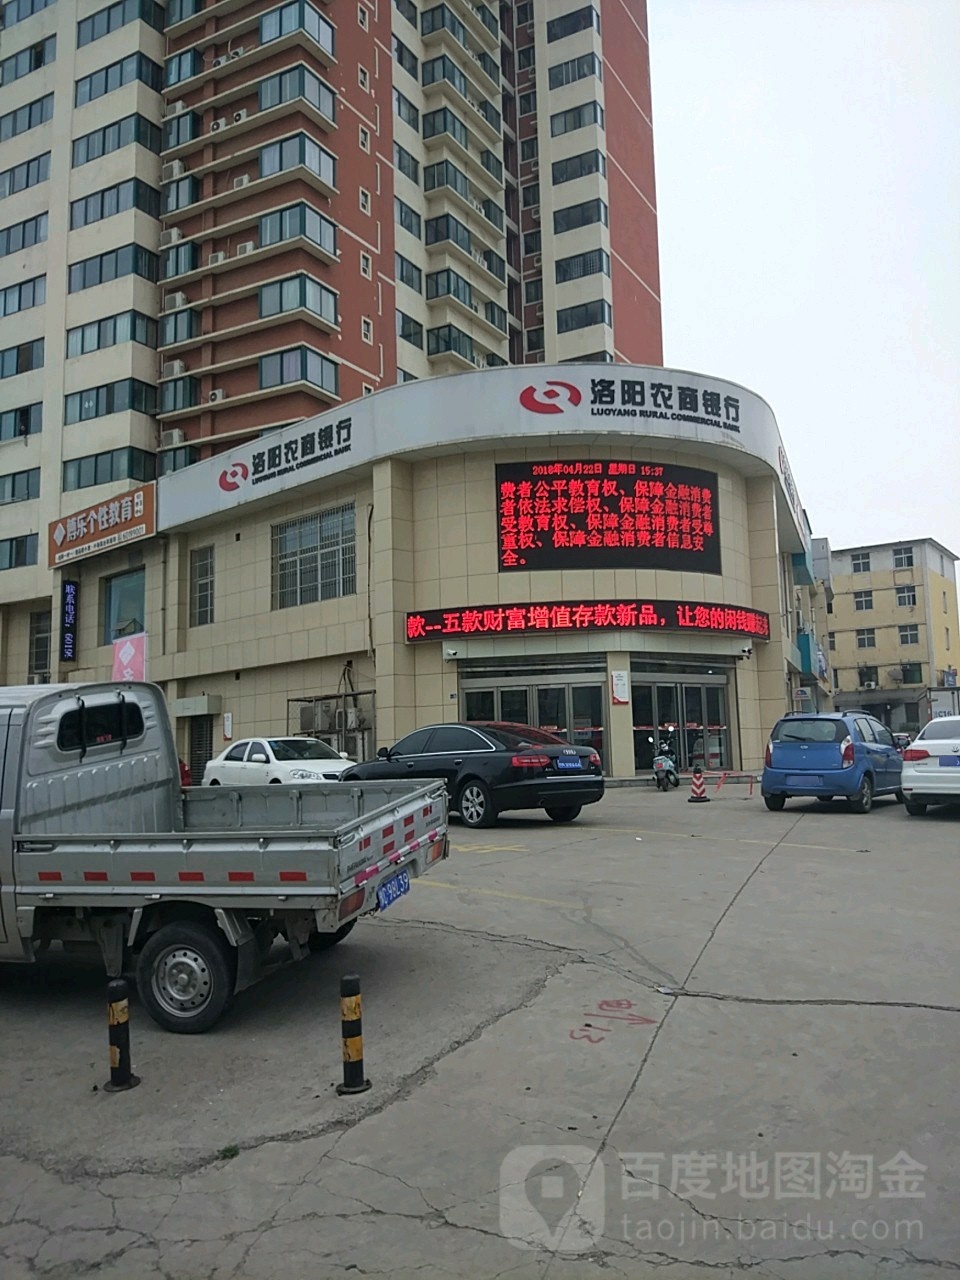 漯阳农商银行(邙岭路支行)